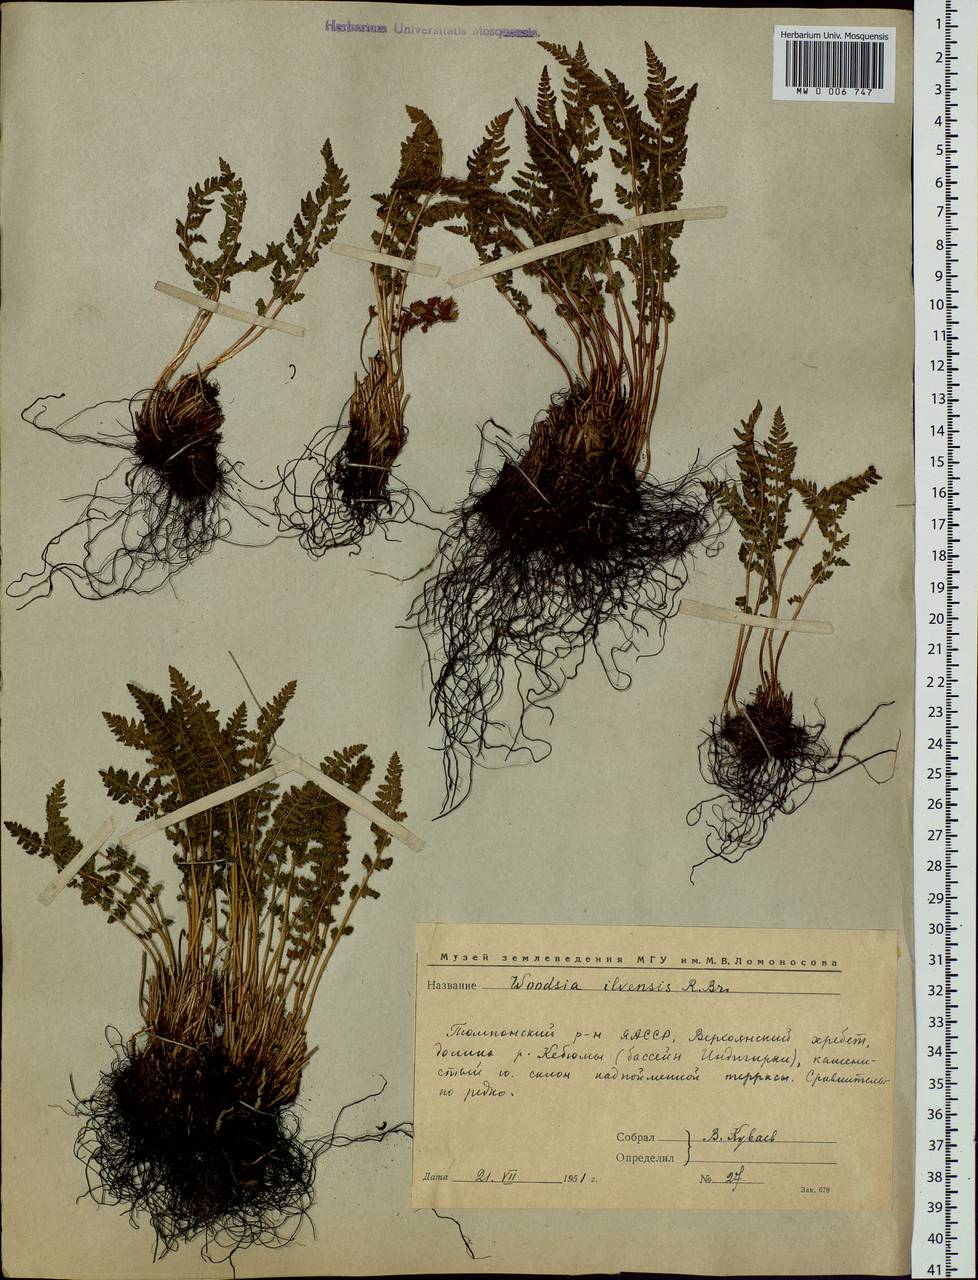 Woodsia ilvensis (L.) R. Br., Siberia, Yakutia (S5) (Russia)